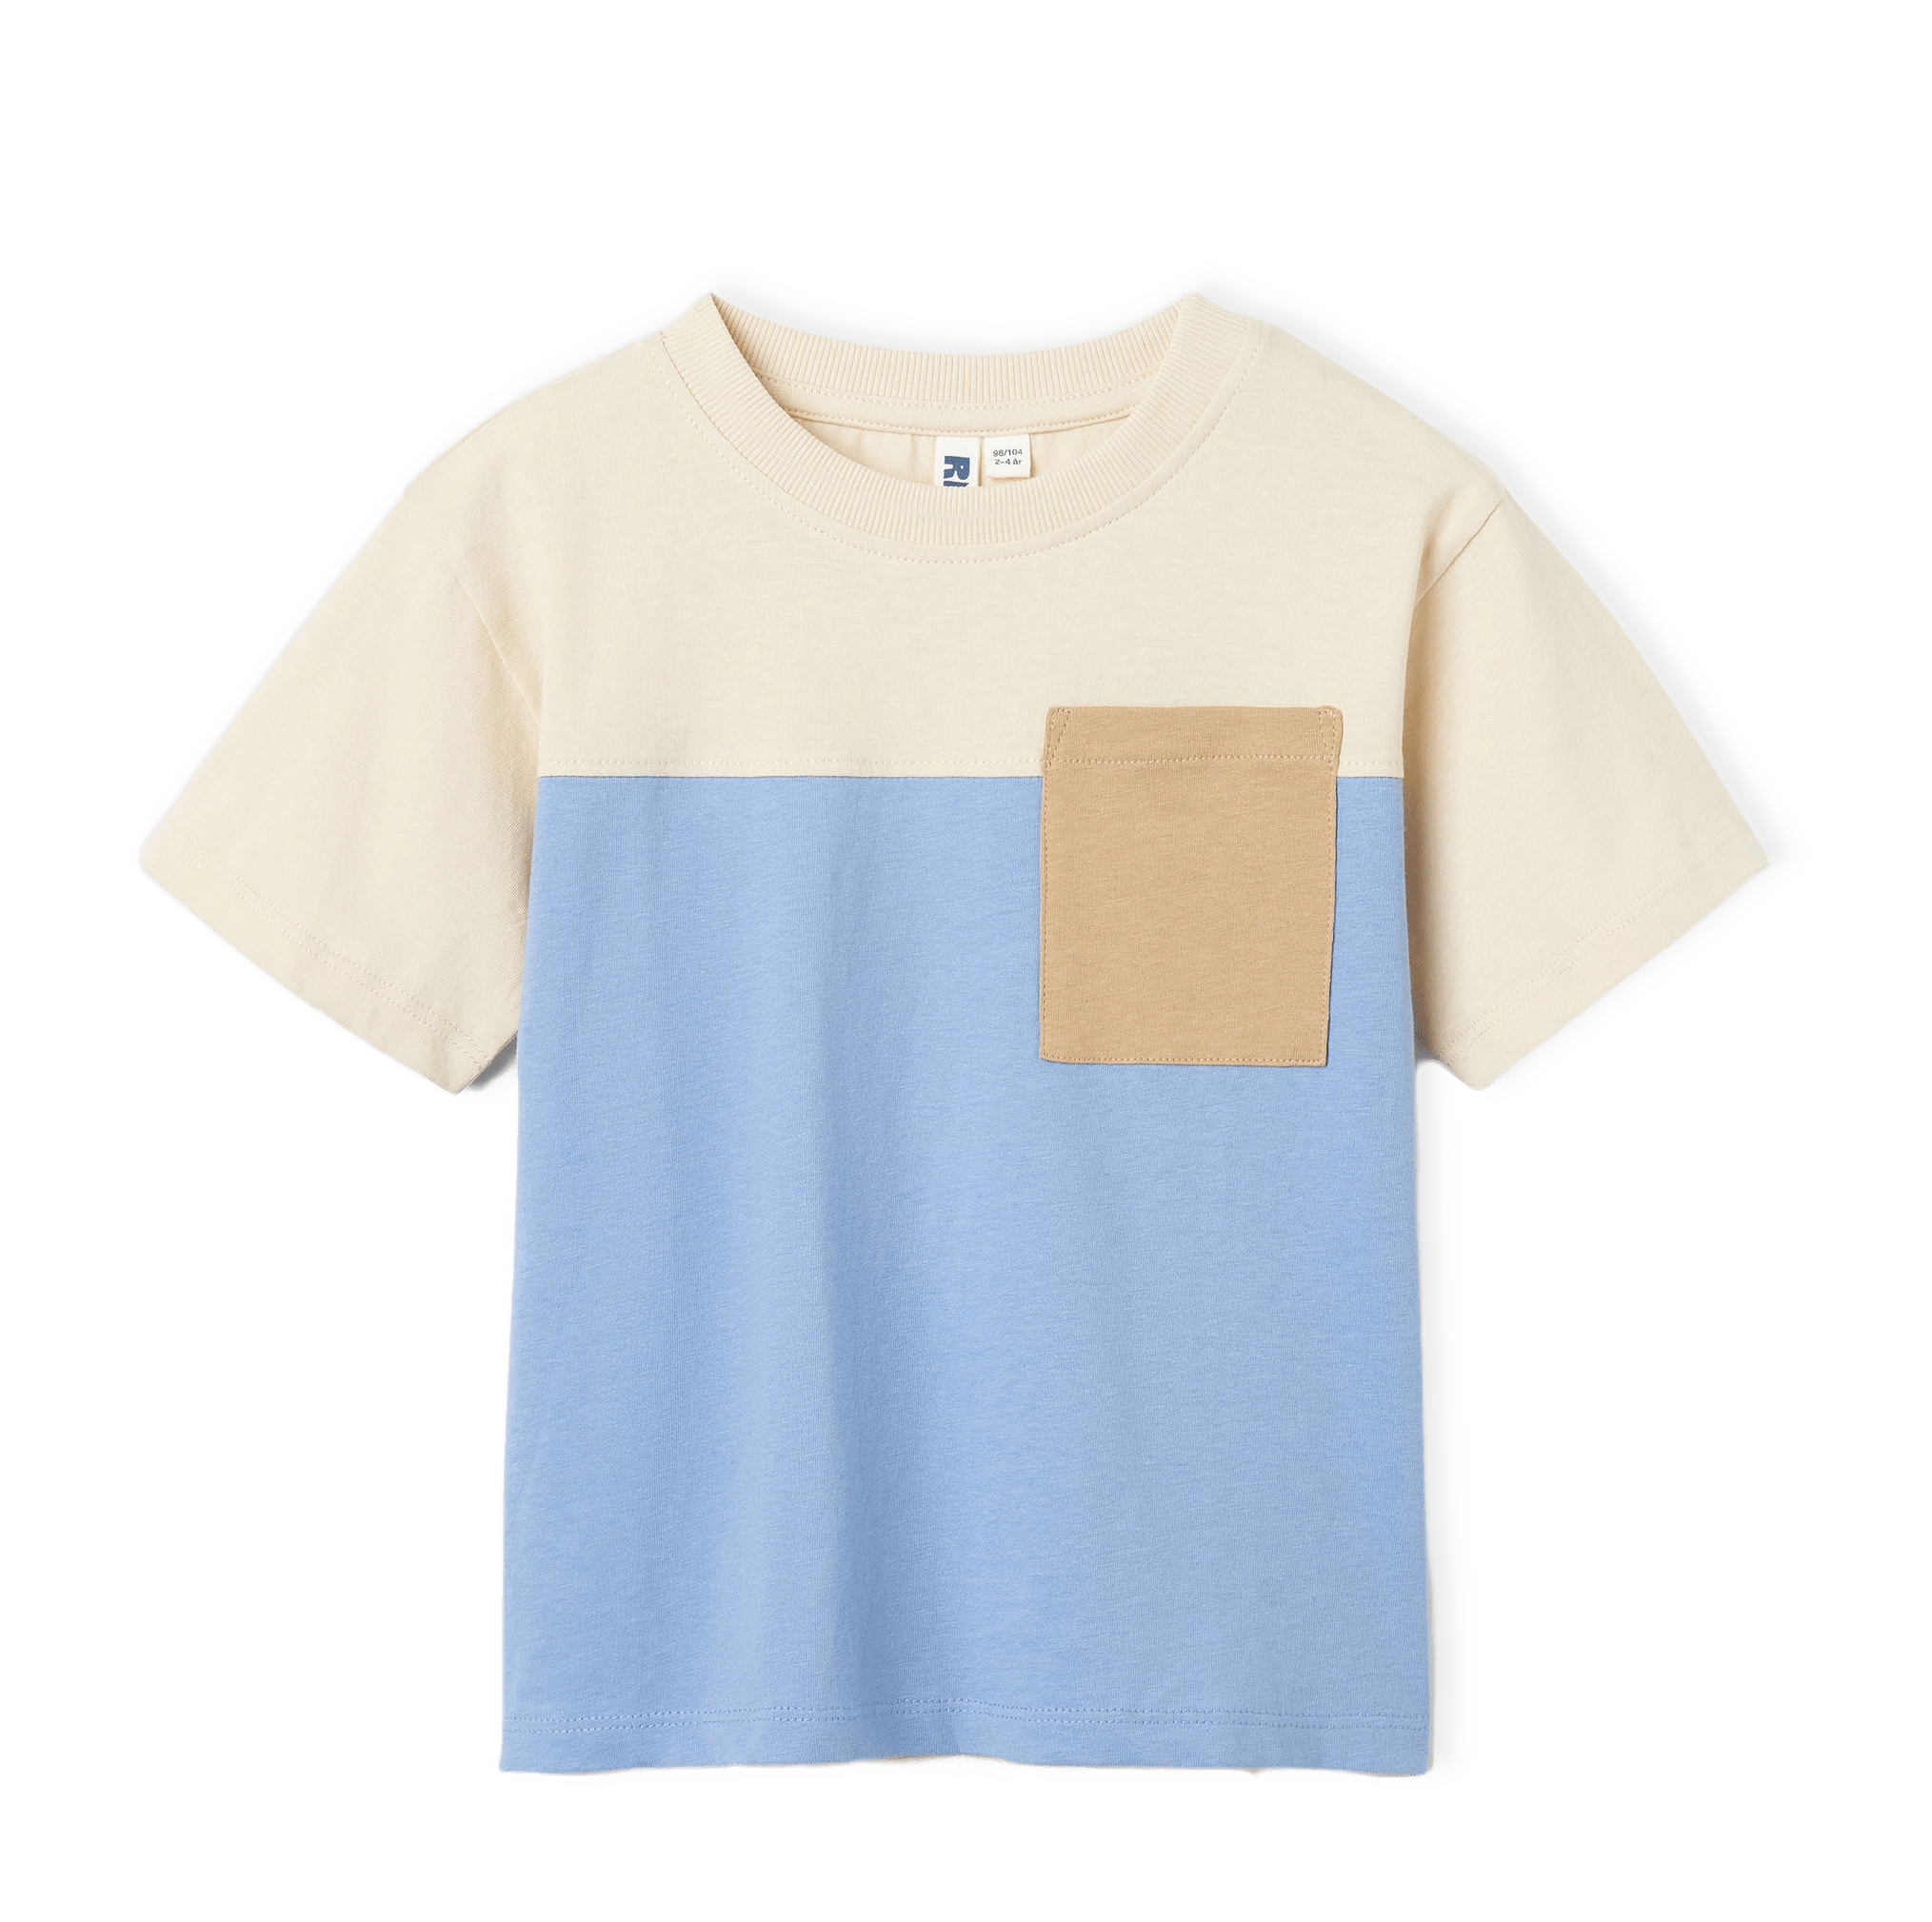 T-shirt i blockfärger HENRIK från RIKIKI